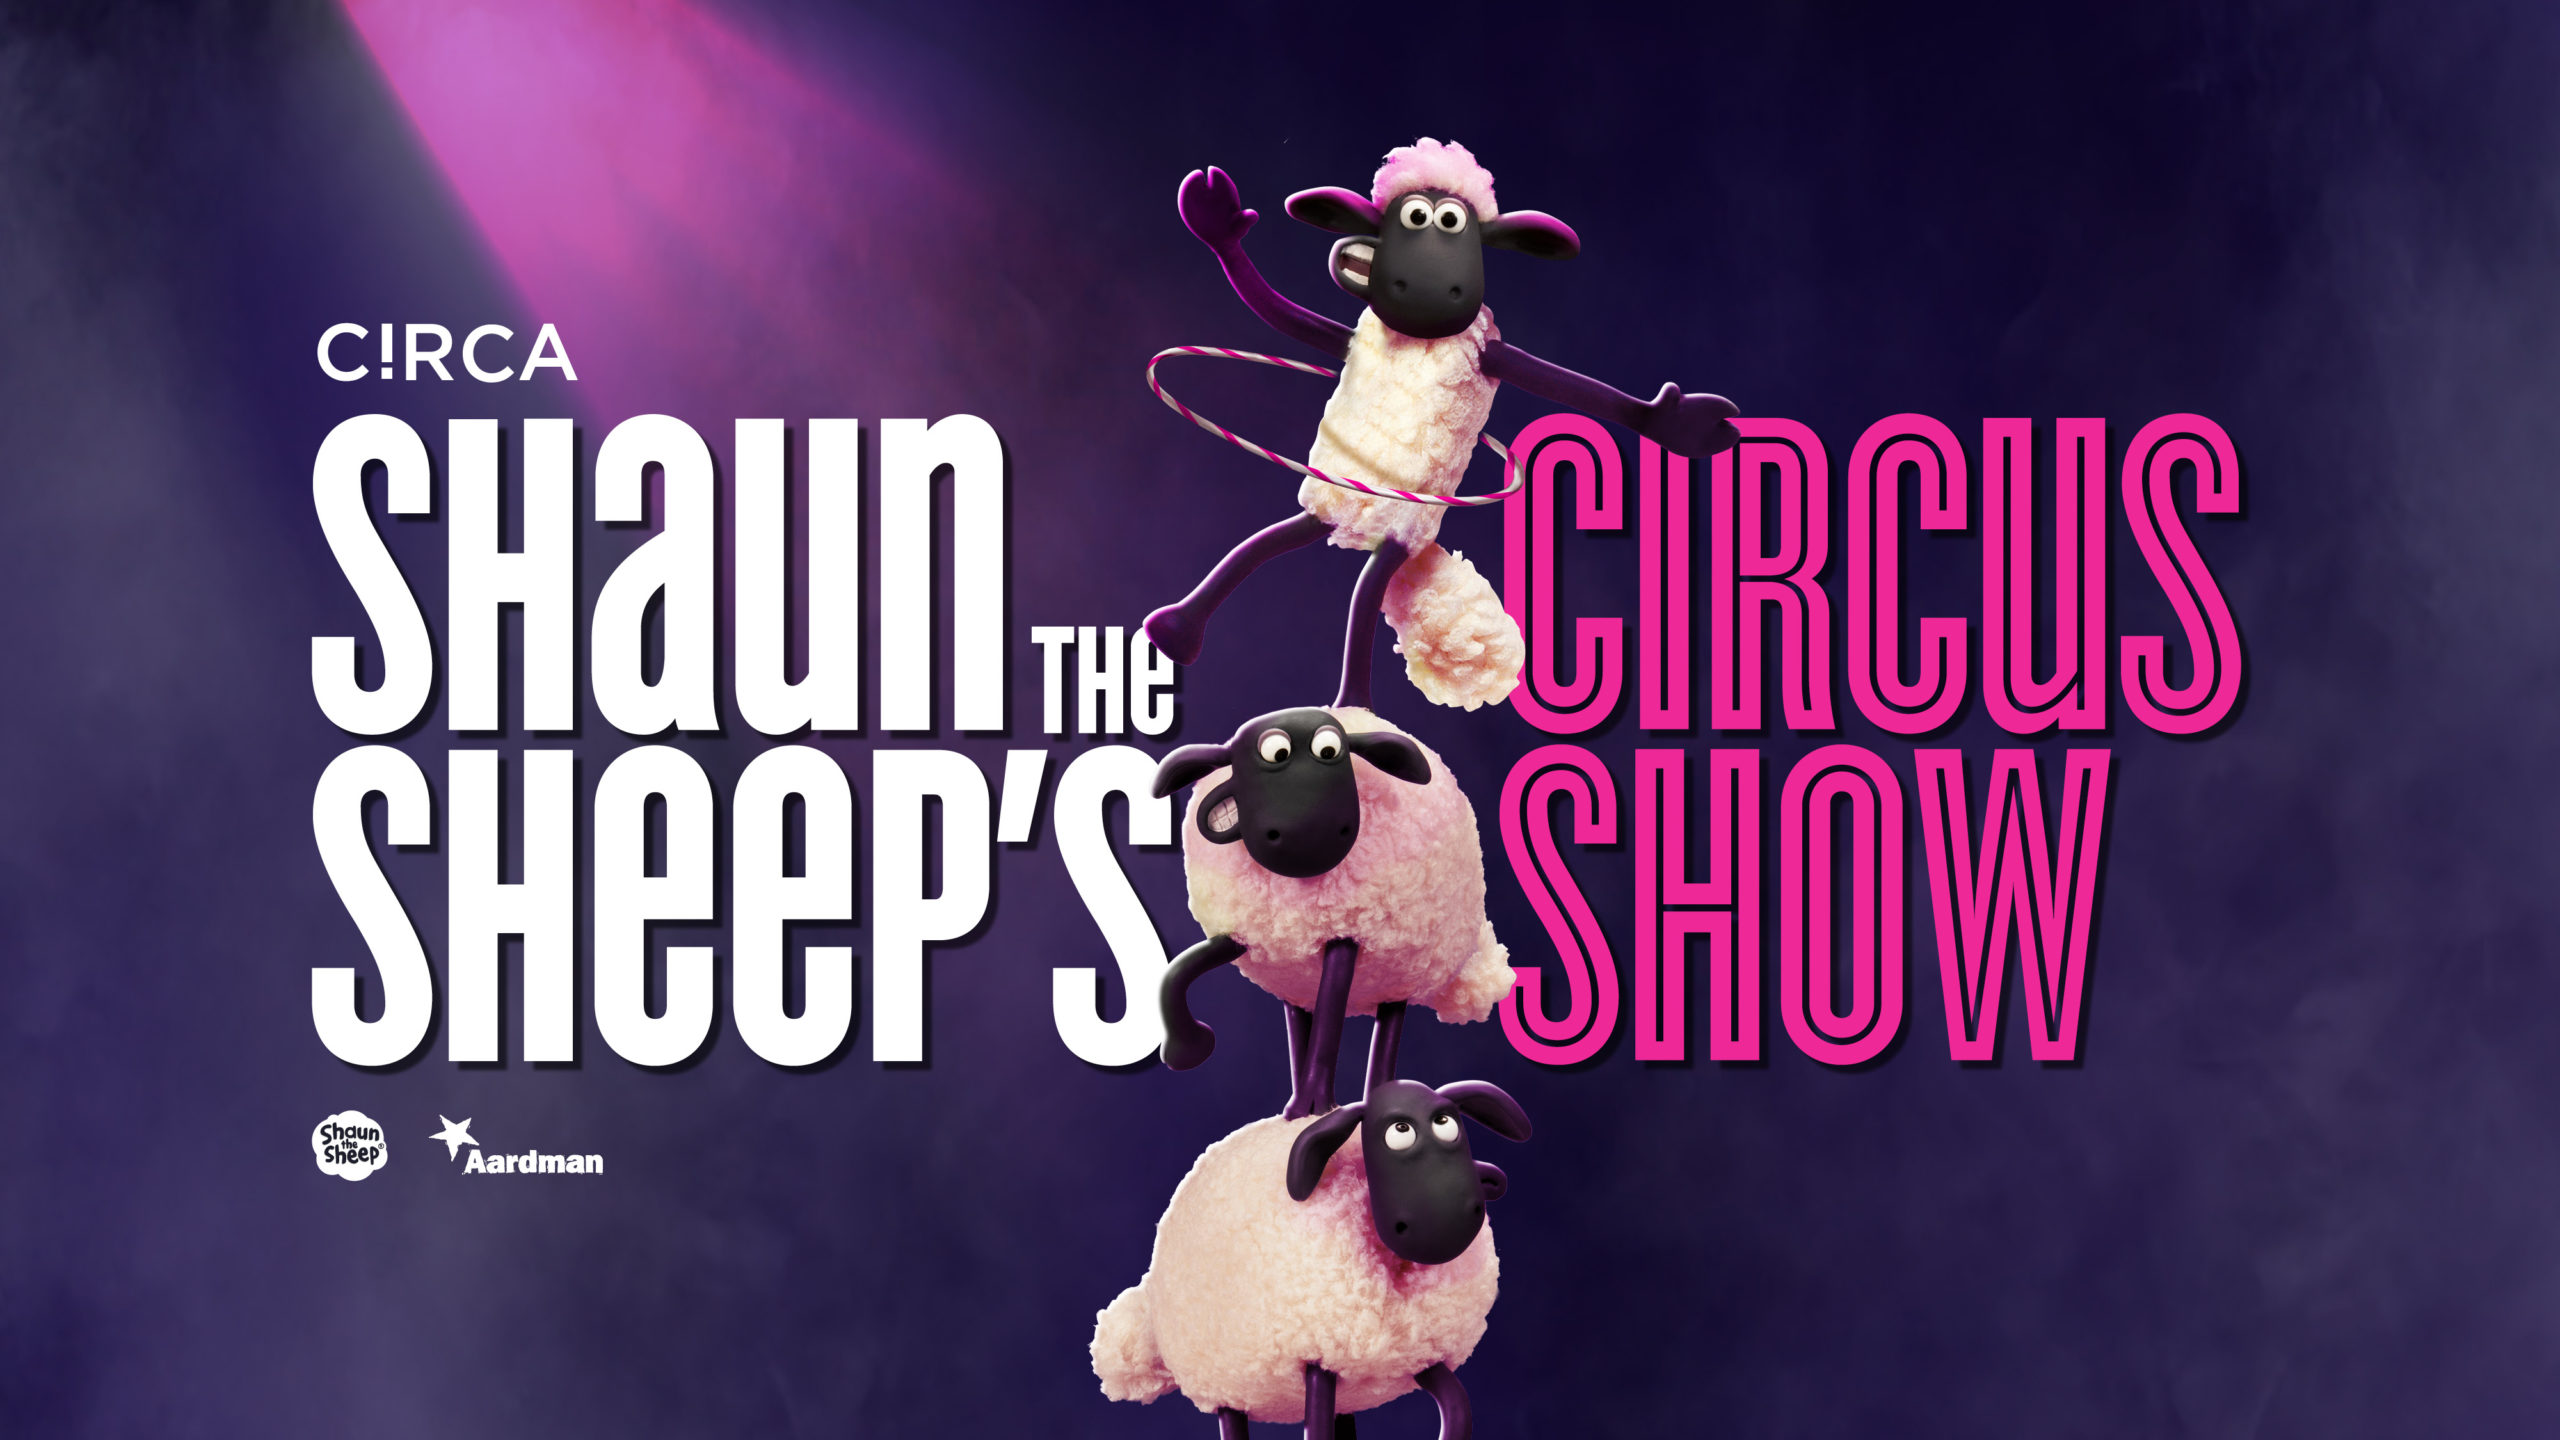 Shaun The Sheep S Circus Show Circa